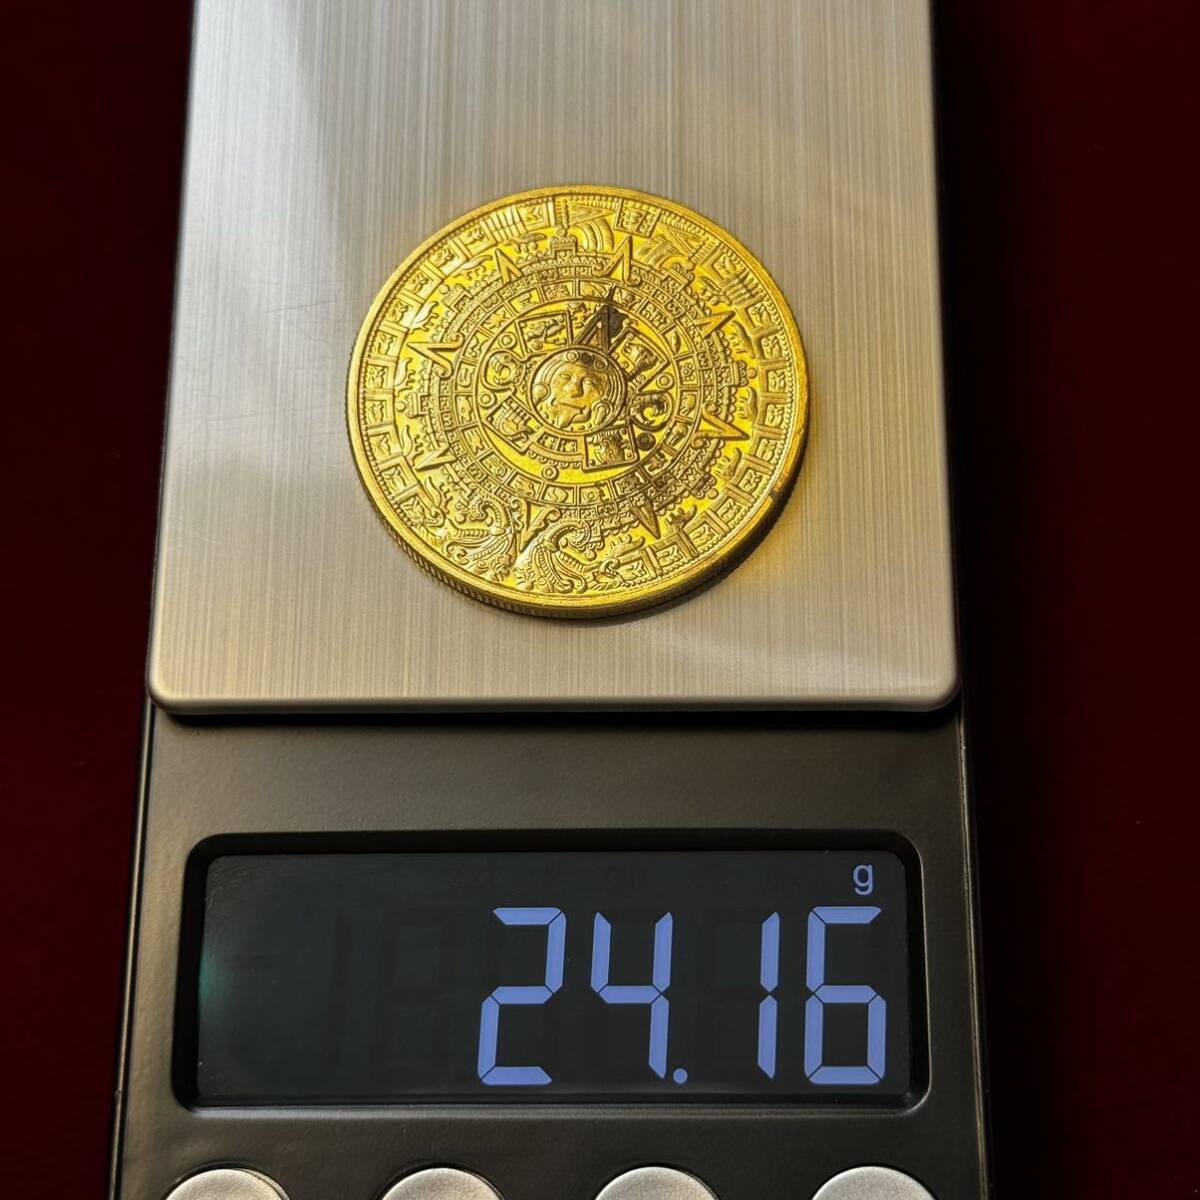 アステカ 硬貨 古銭 マヤ チチェン・イッツァ ククルカンの神殿 アステカ神話 闇の悪鬼 ツィツィミメ 記念メタル コイン 海外硬貨 の画像6